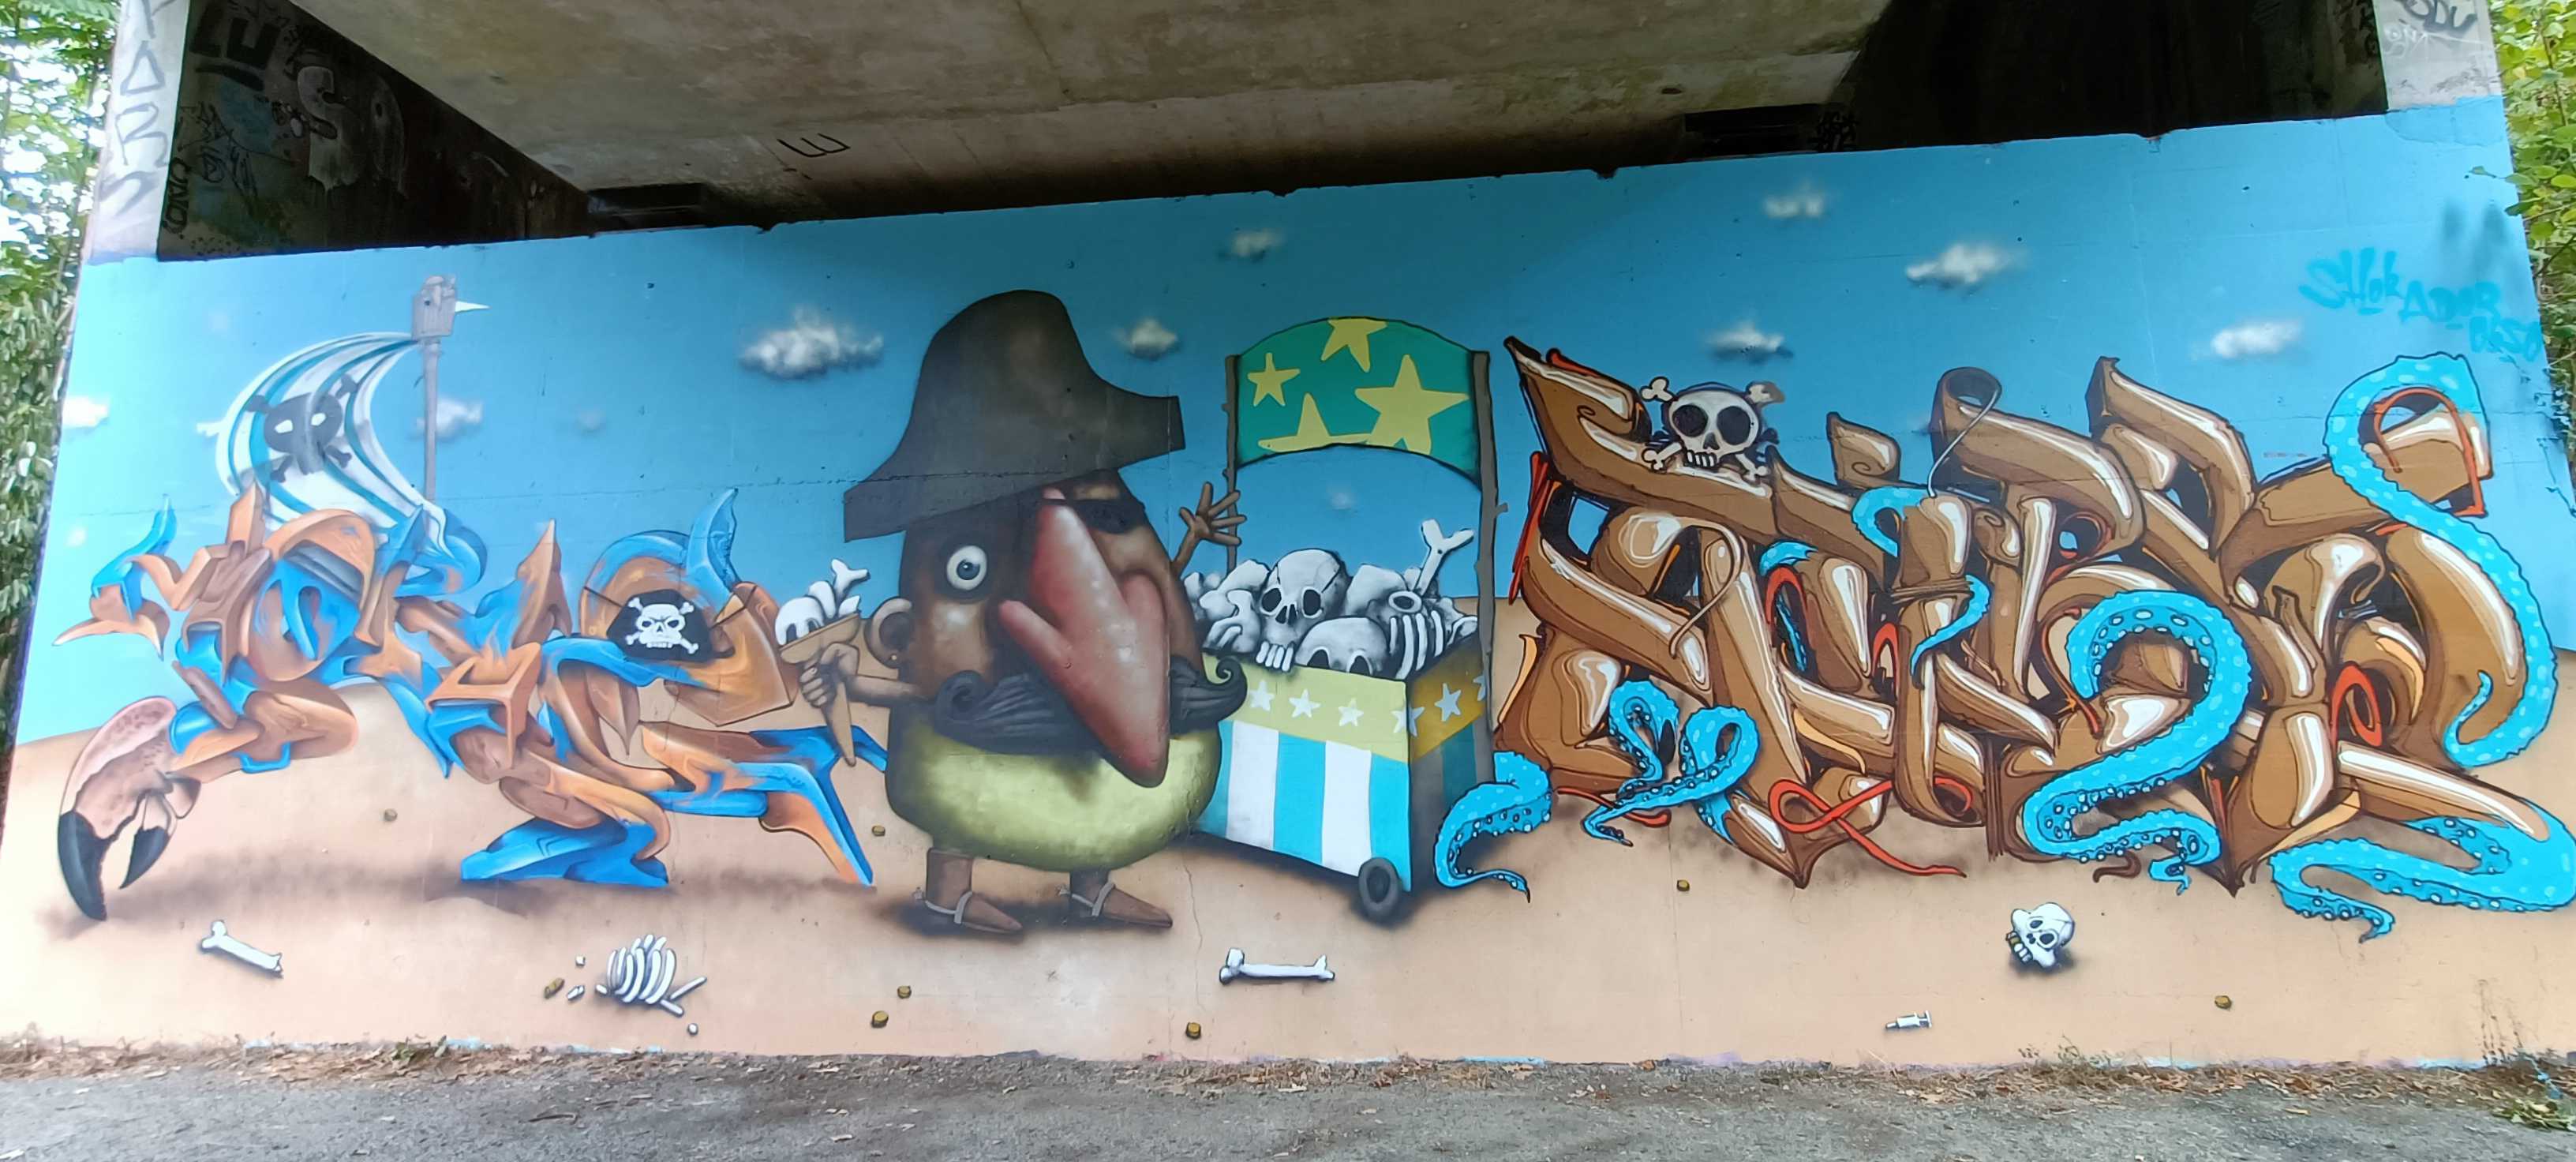 Graffiti 5870  de Ador capturé par Rabot à Rezé France